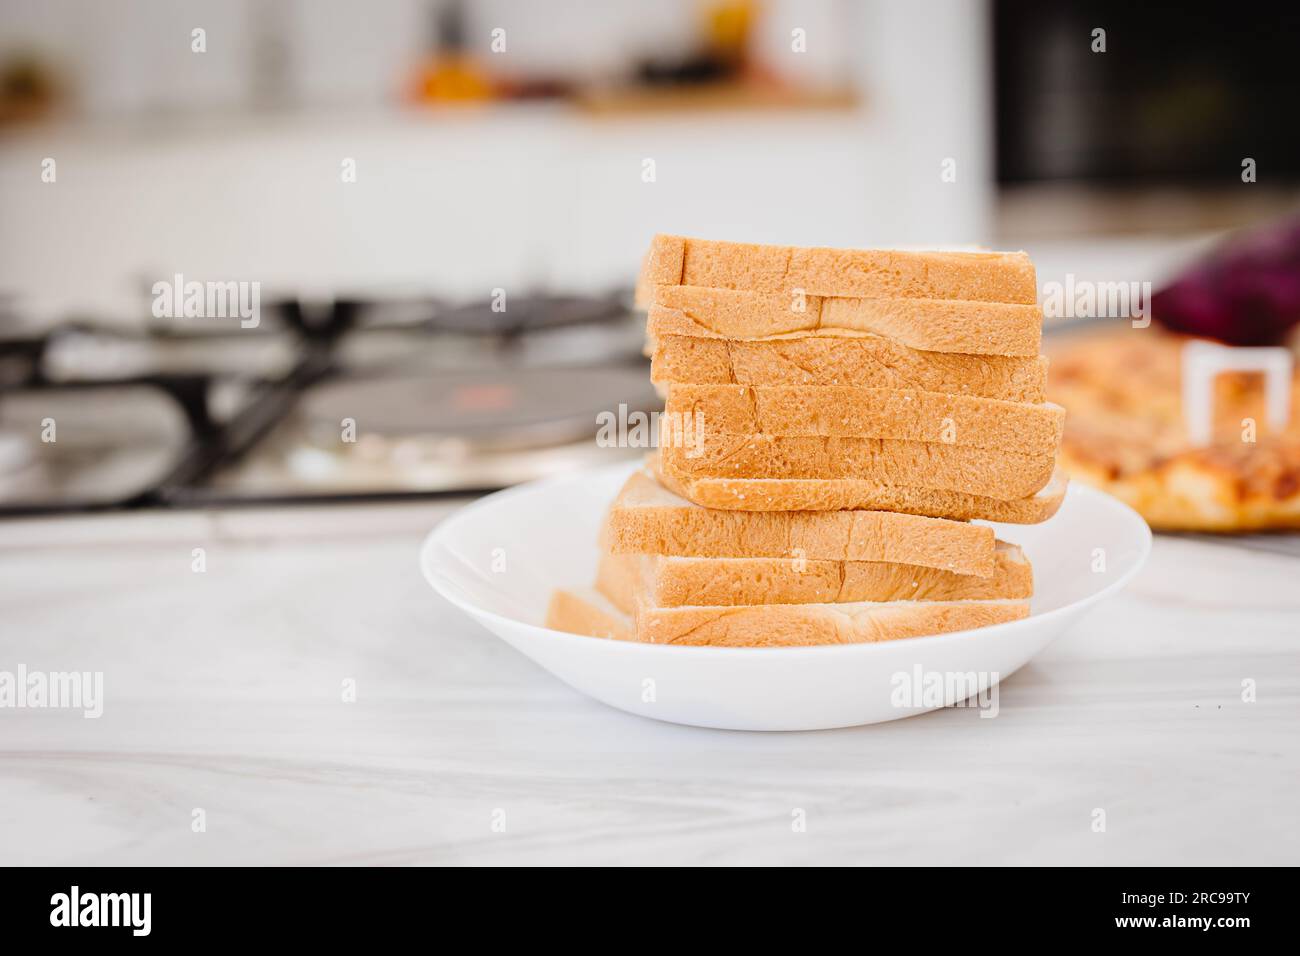 primo piano: una pila di fogli di pane a fette impilata su un piatto bianco in cucina Foto Stock